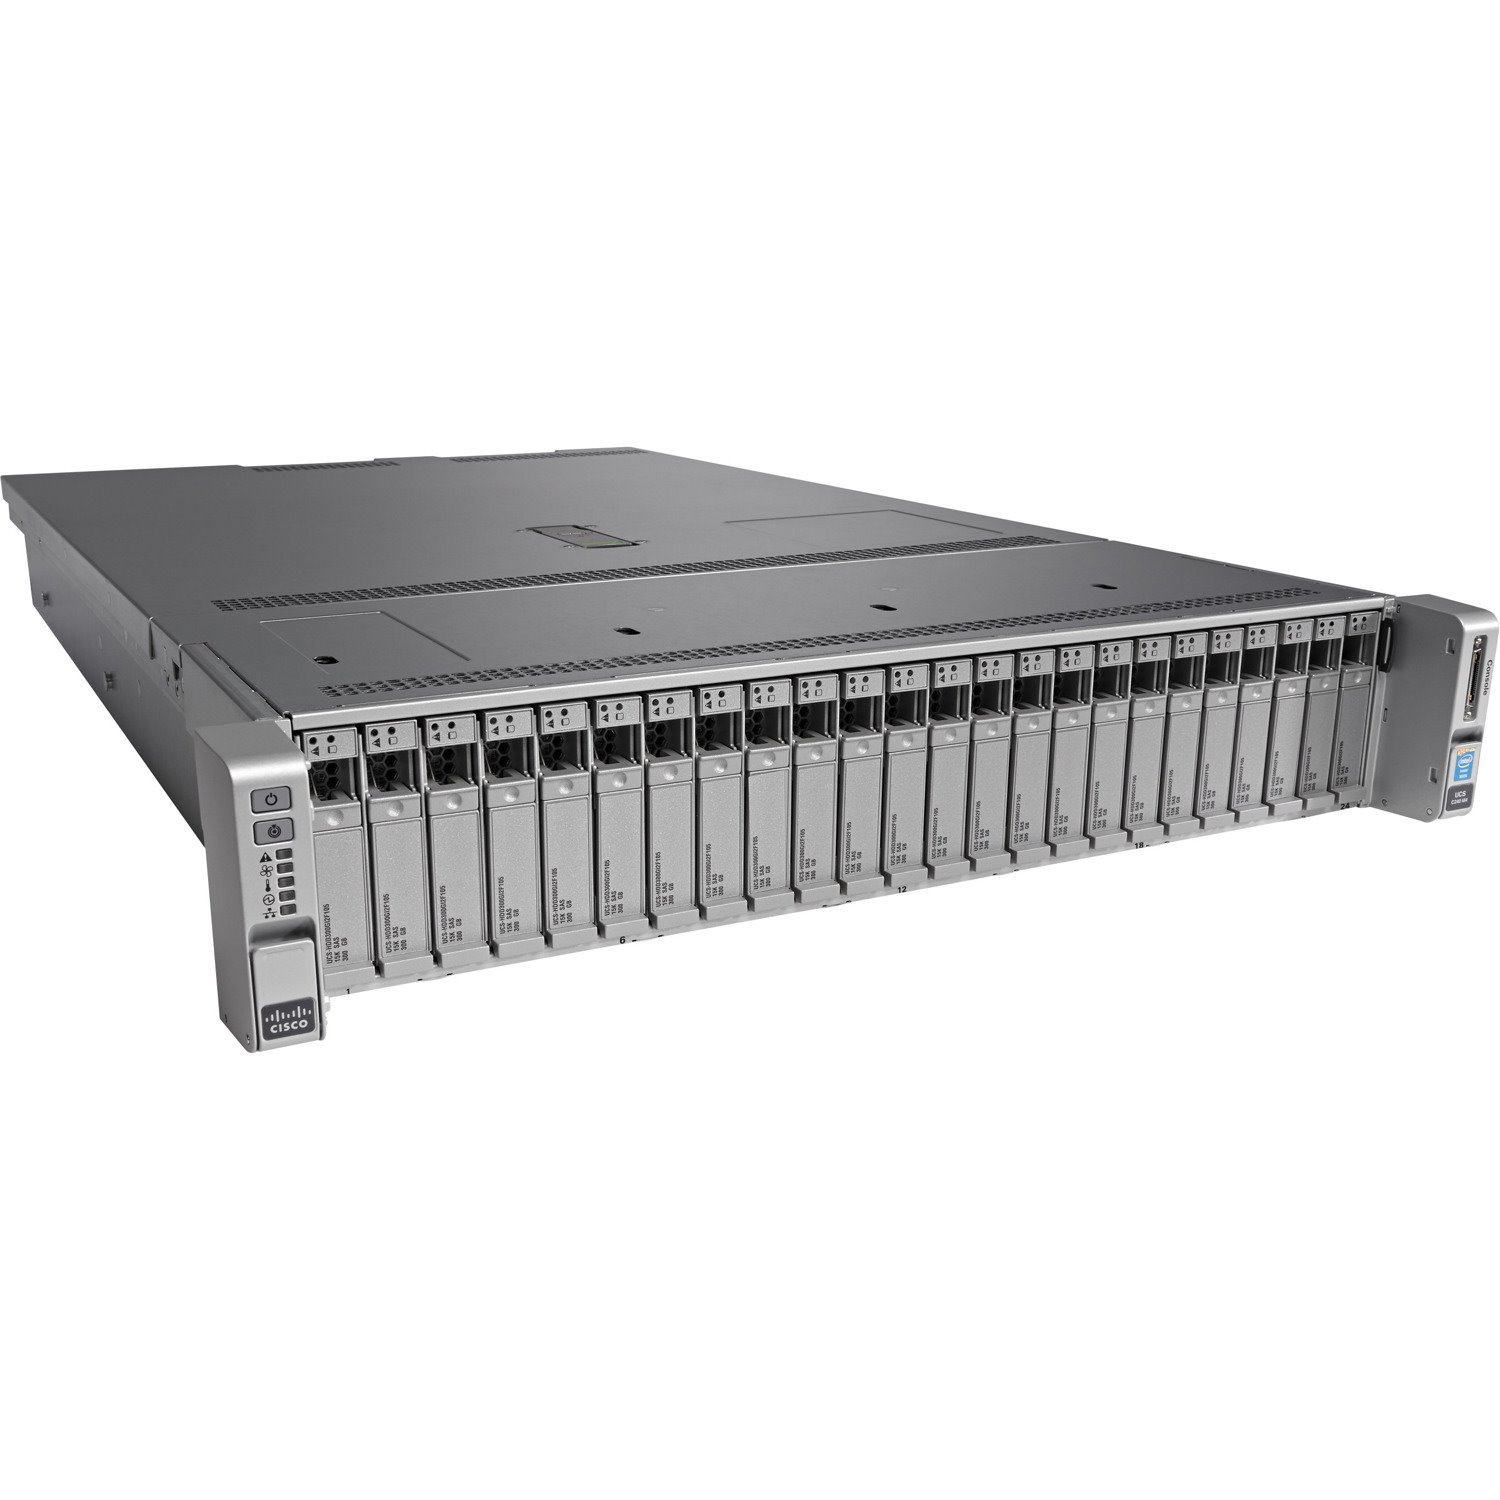 Cisco C240 M4 2U Rack Server - 2 x Intel Xeon E5-2630 v3 2.40 GHz - 64 GB RAM - 12Gb/s SAS, Serial ATA Controller